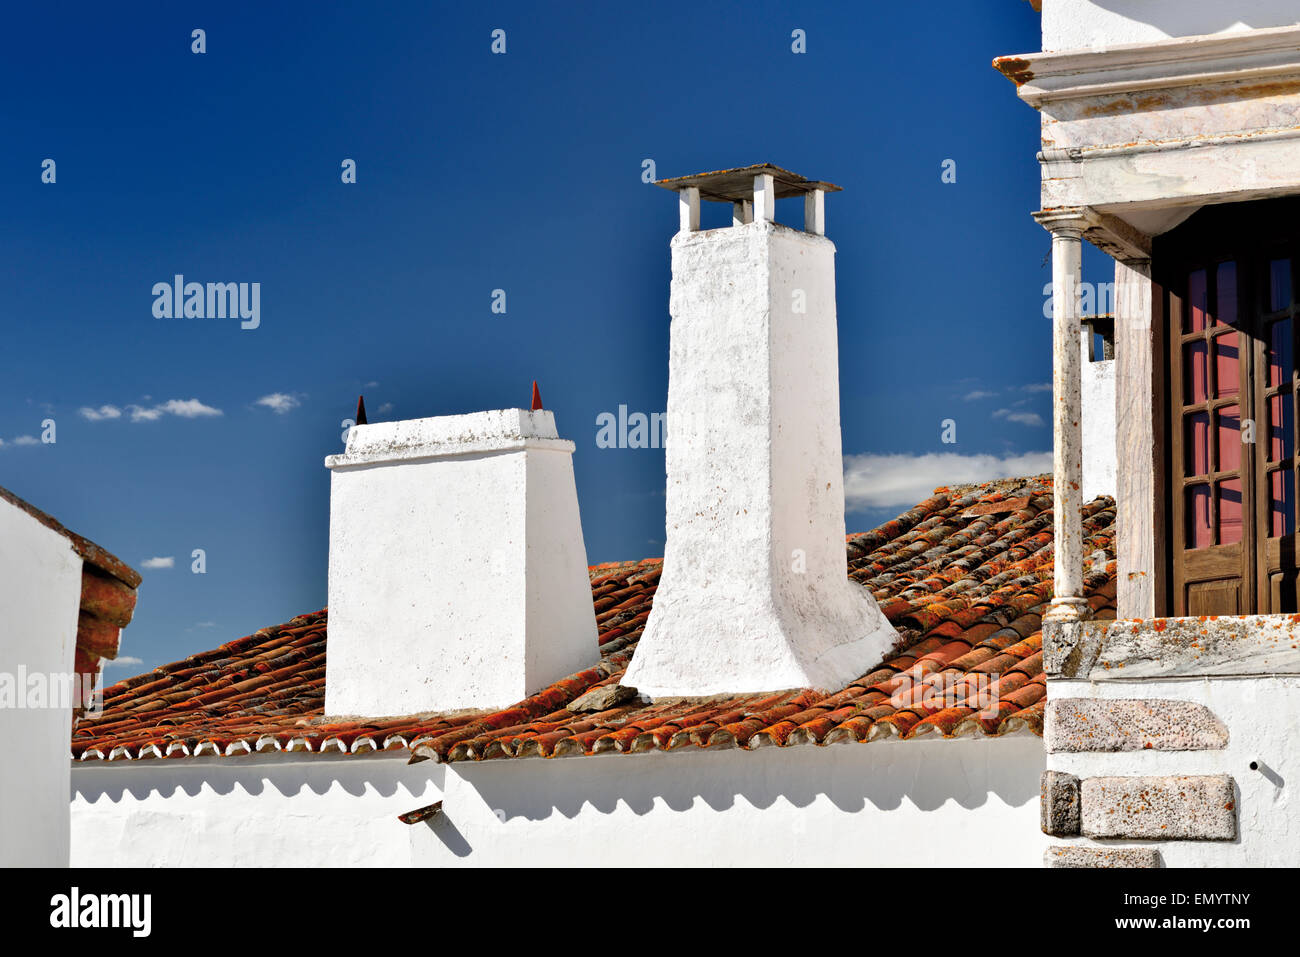 Portugal, Alentejo: Typische Schornsteine und Dachdetails in historischen Dorf Monsaraz Stockfoto